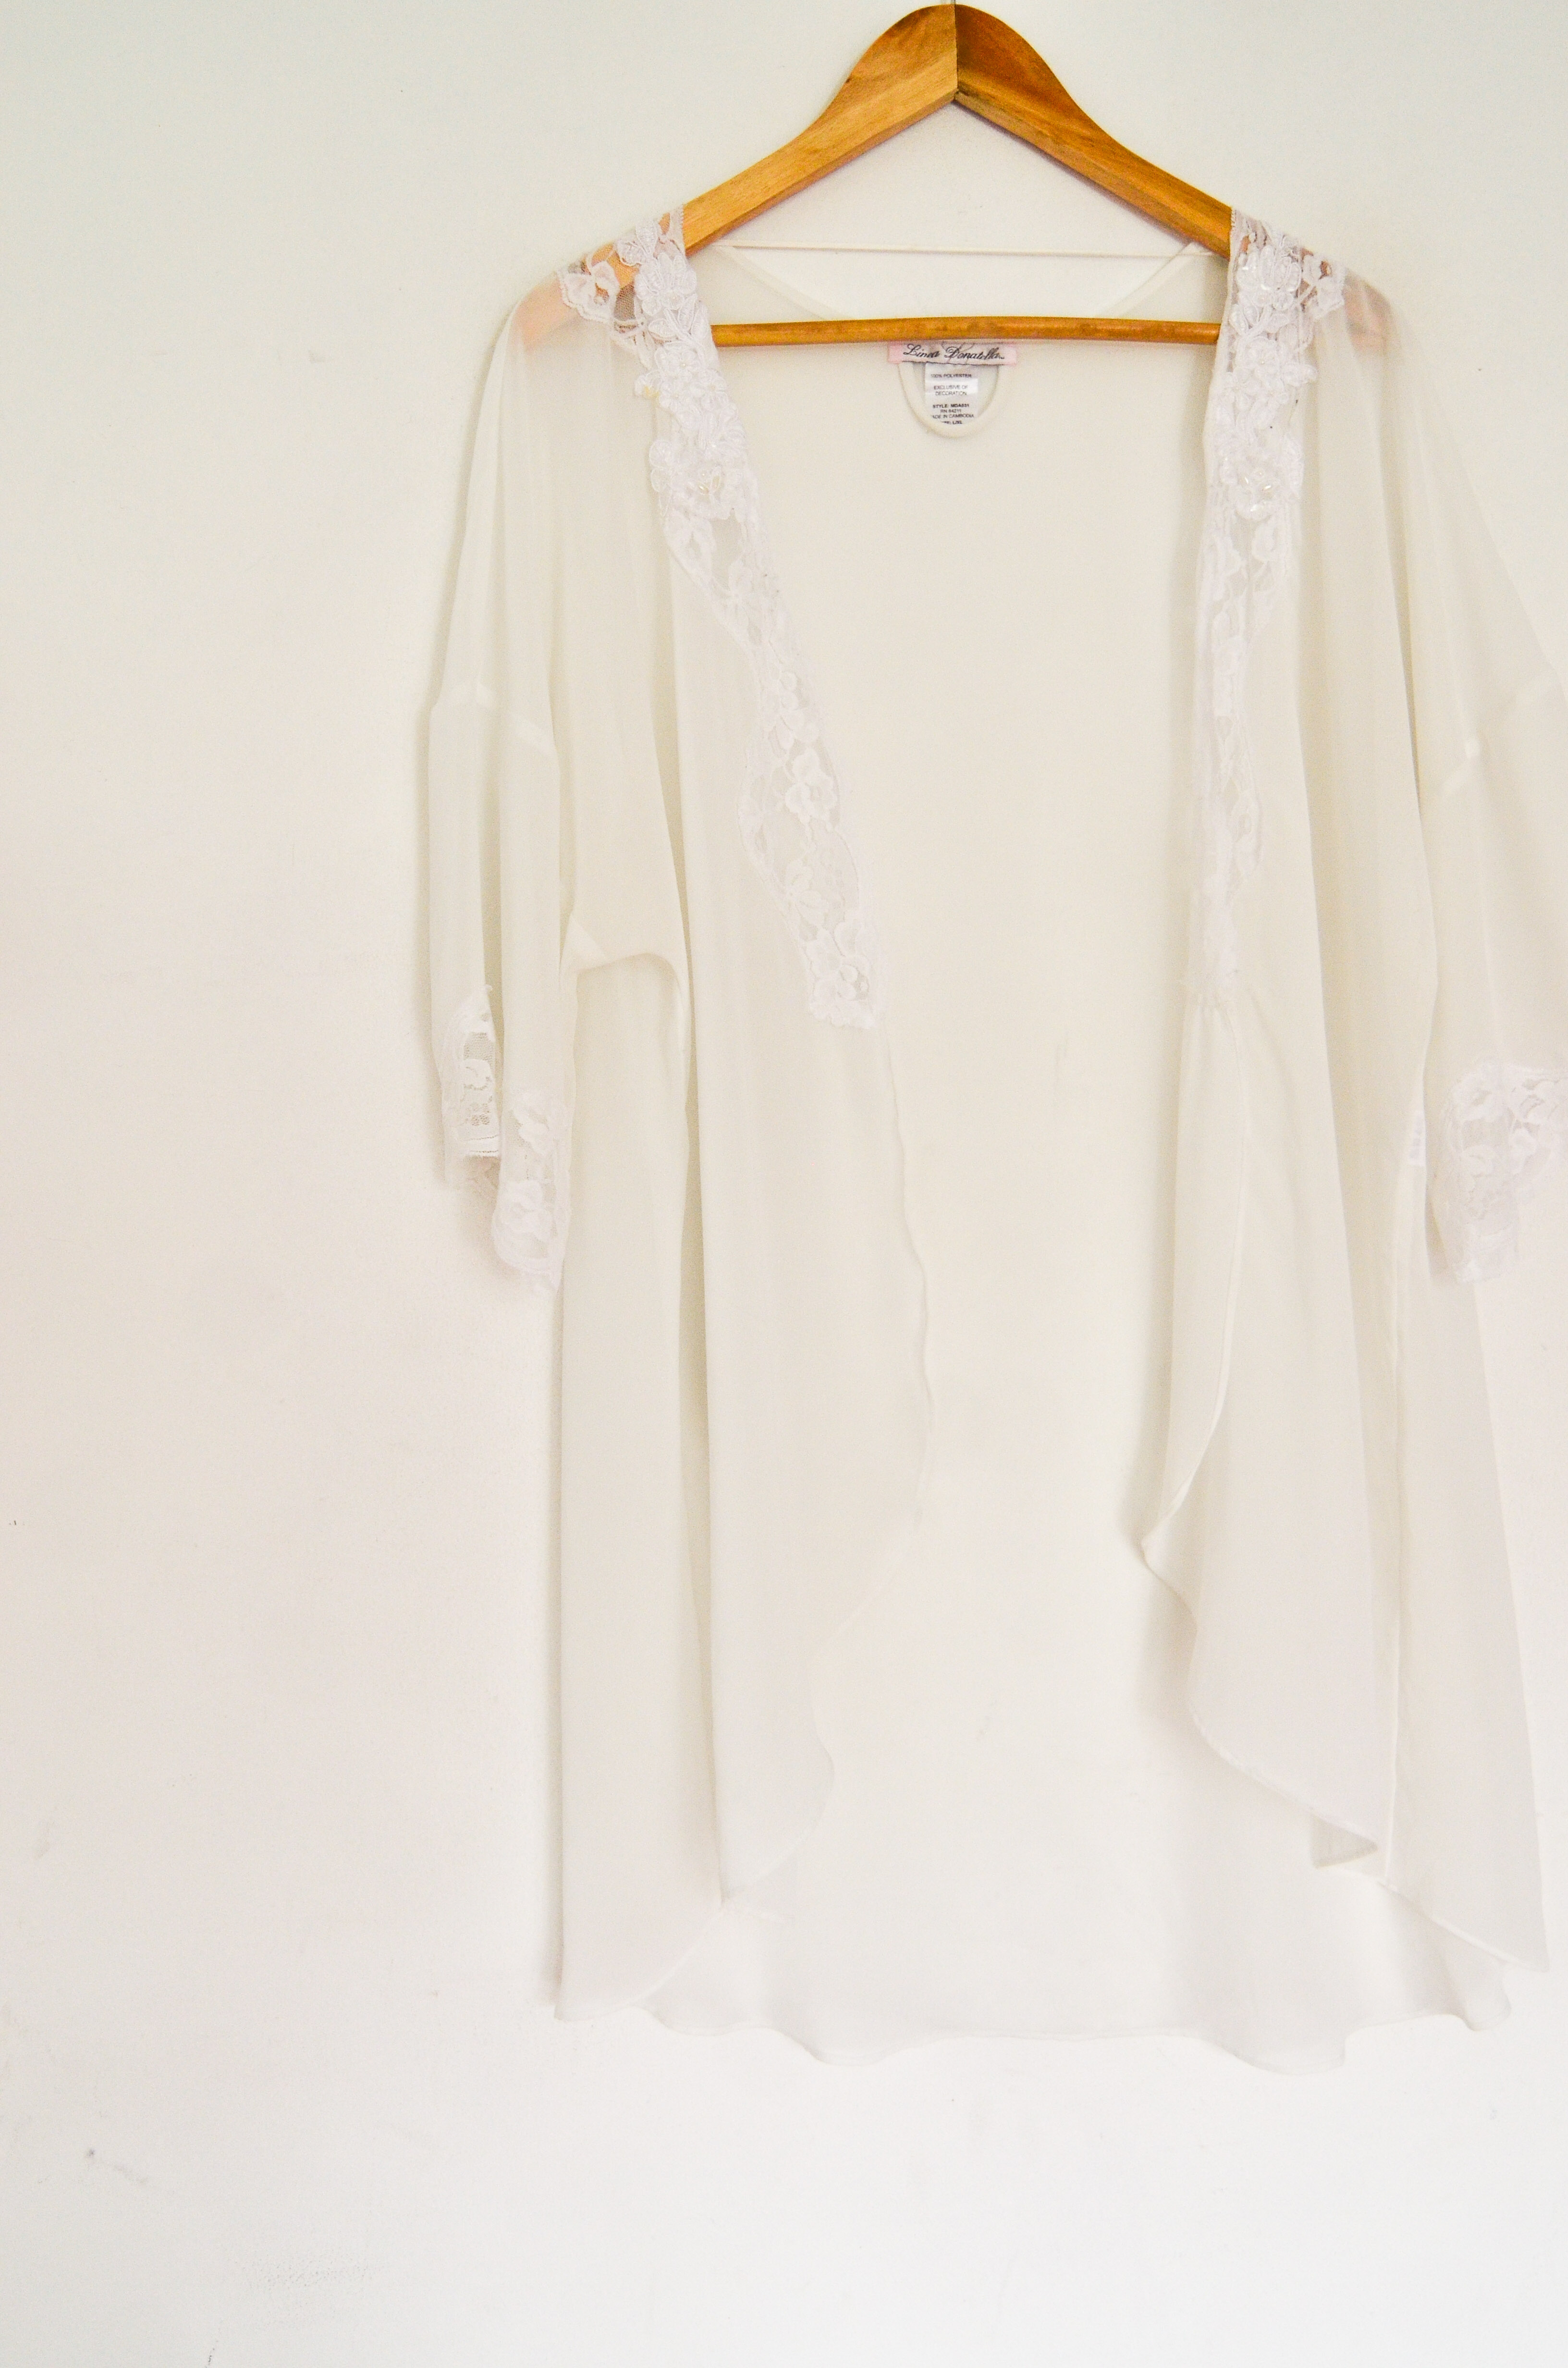 Kimono lencero blanco encaje